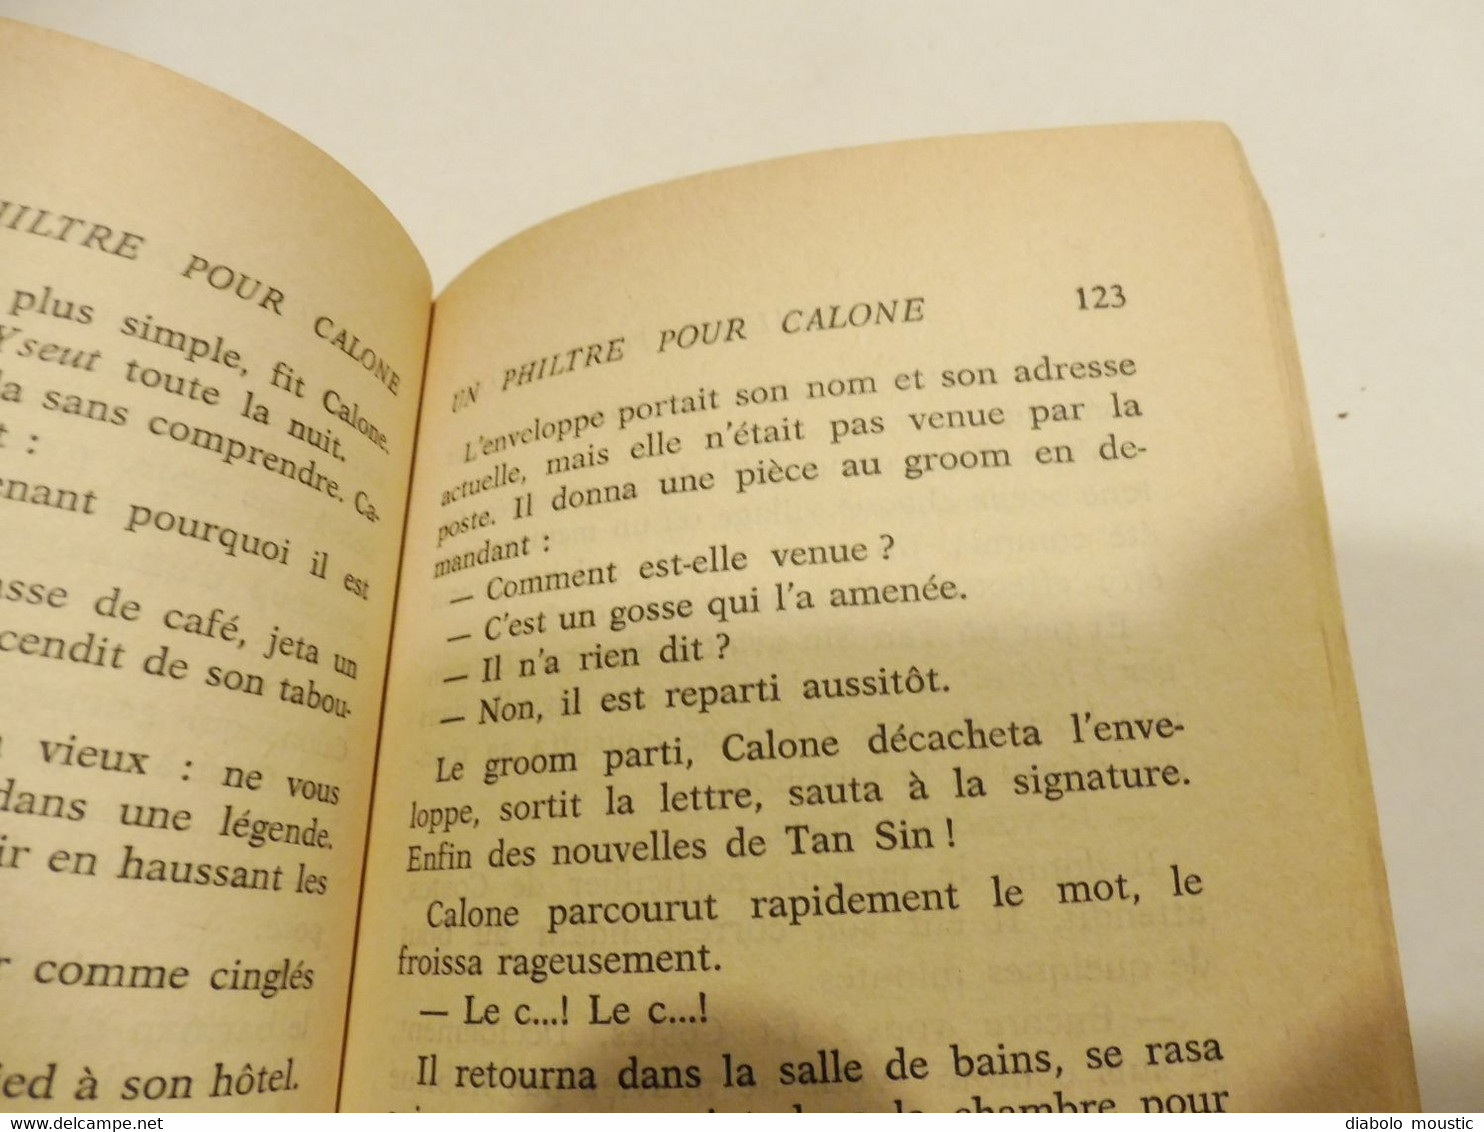 1968  UN PHILTRE POUR CALONE  - par Alain Page (éditions Fleuve Noir )